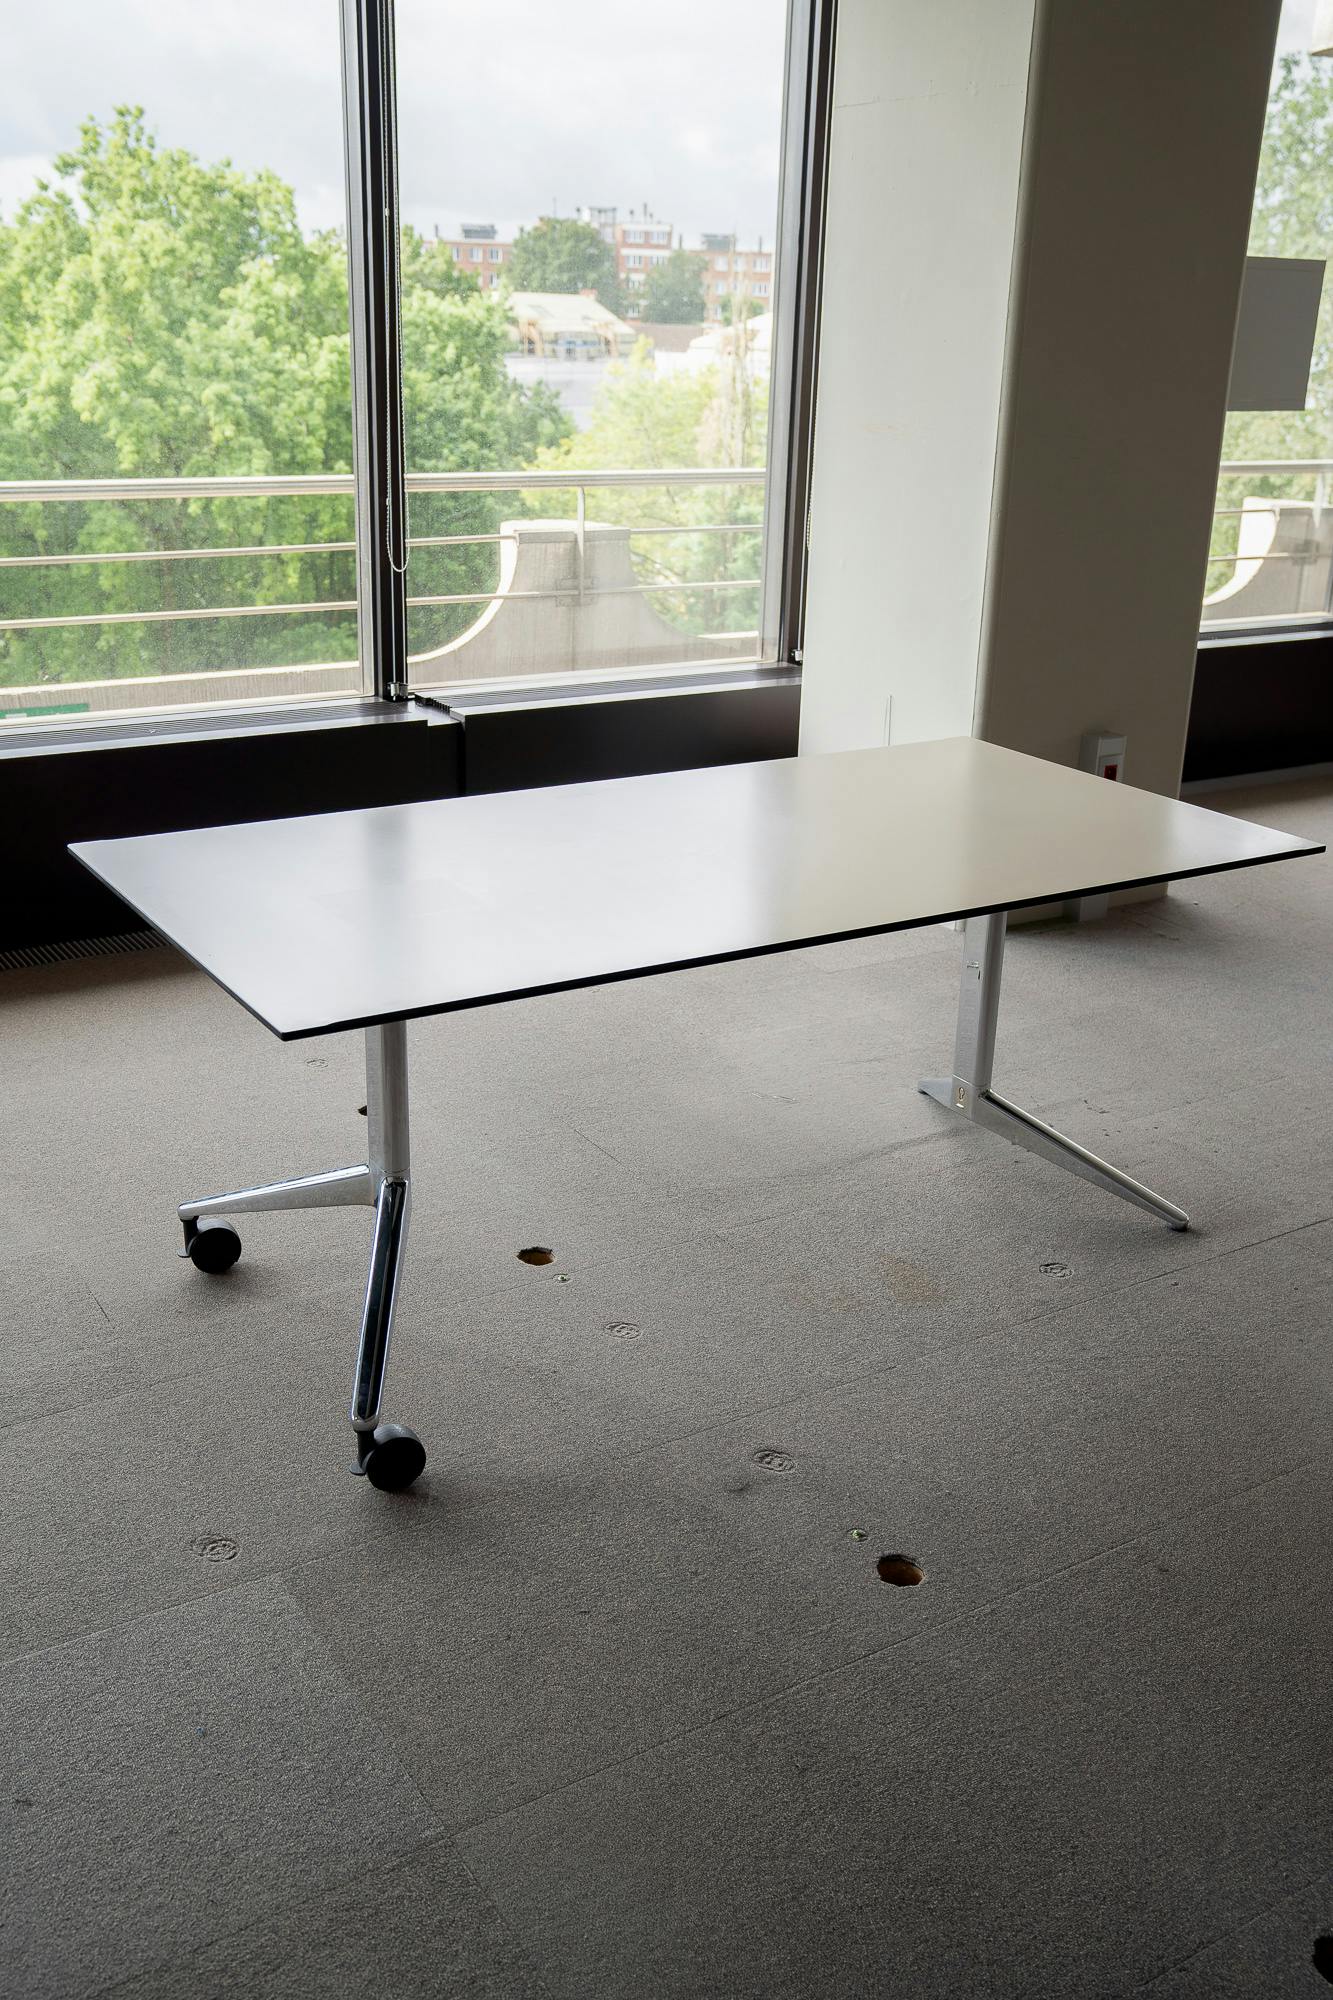 Ahrend witte tafel op 2 wielen - Tweedehands kwaliteit "Tafels" - Relieve Furniture - 2